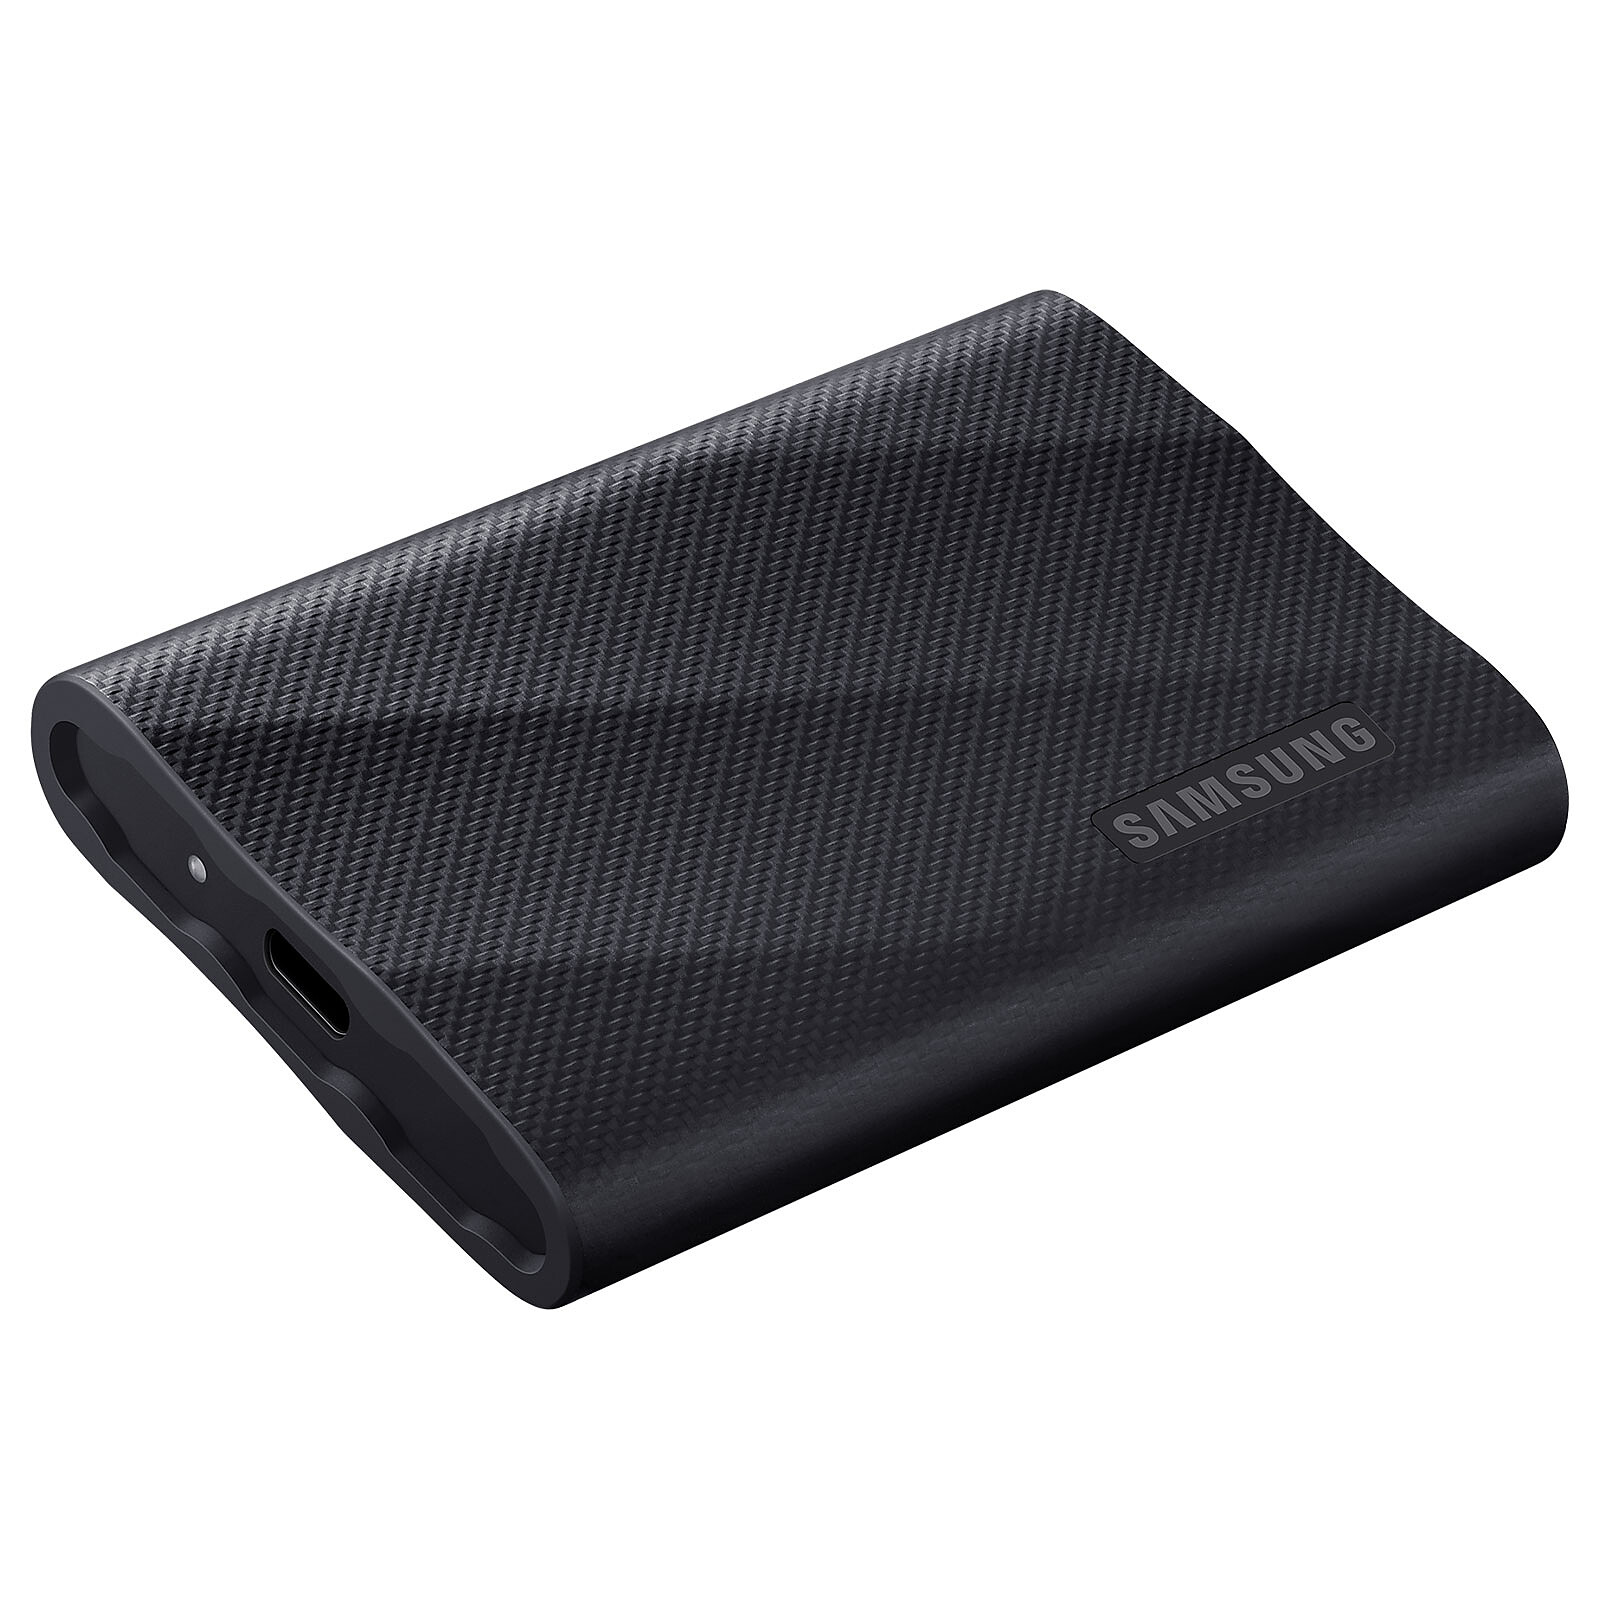 Disque SSD Externe SanDisk portable 2 To Noir - SSD externes